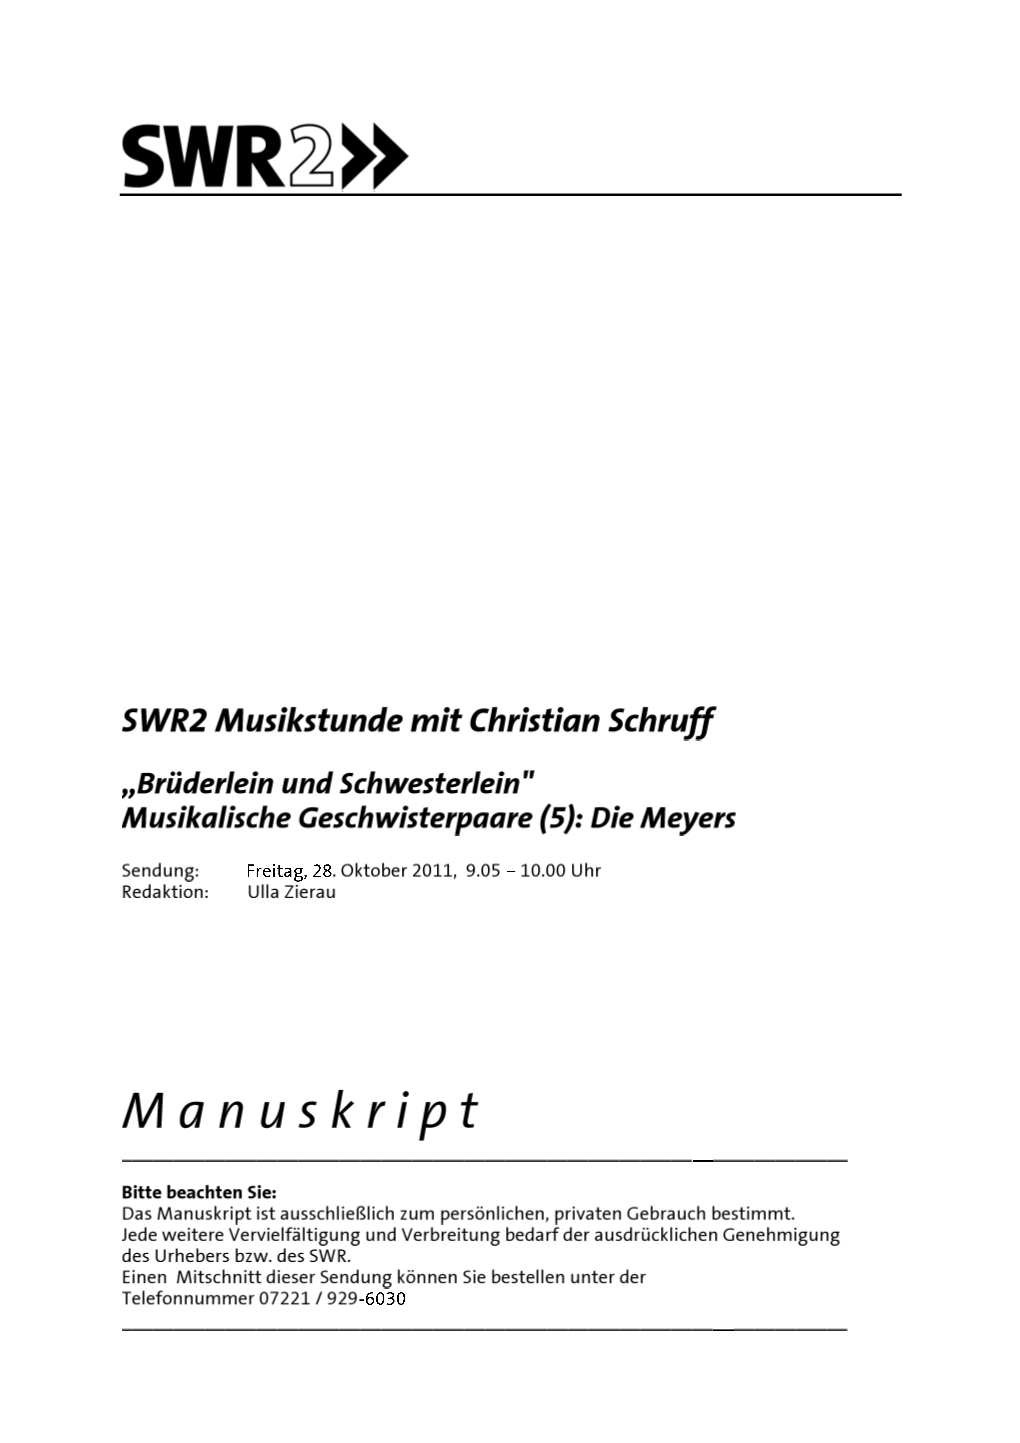 SWR 2 Musikstunde Mit Christian Schruff Freitag, 28.10.2011 „Brüderlein Und Schwesterlein" Musikalische Geschwisterpaare (5): Die Meyers